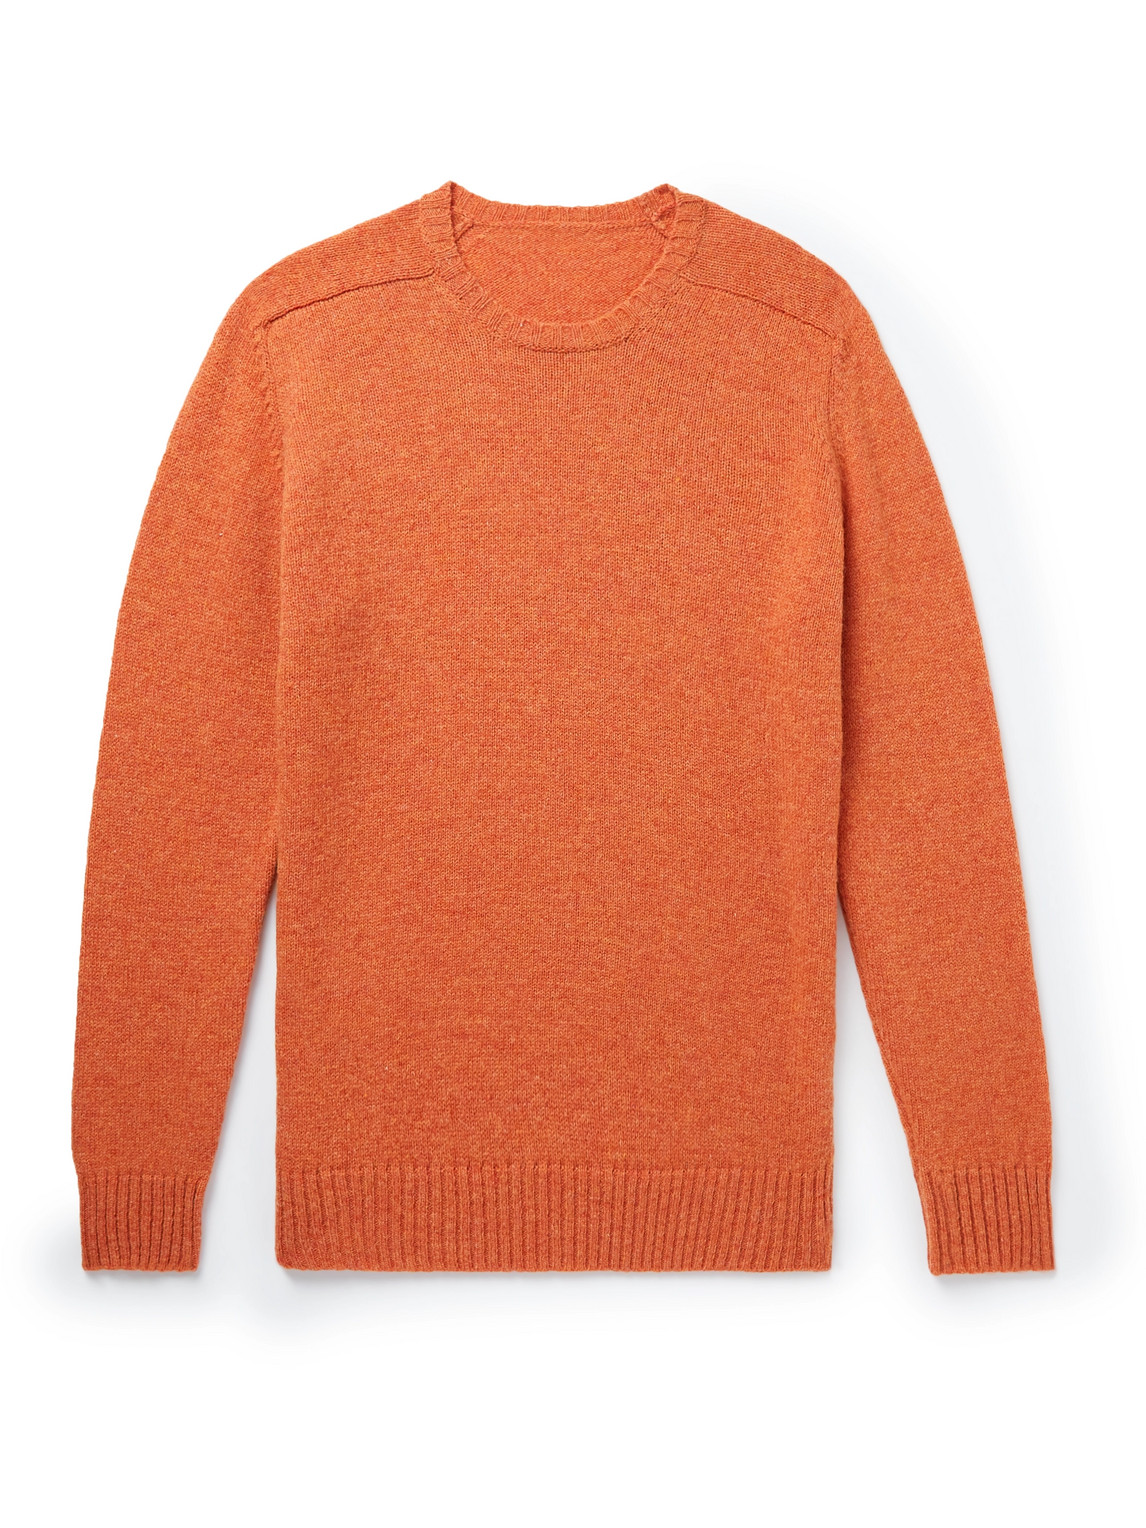 Anderson & Sheppard Shetland Wool Sweater In Orange